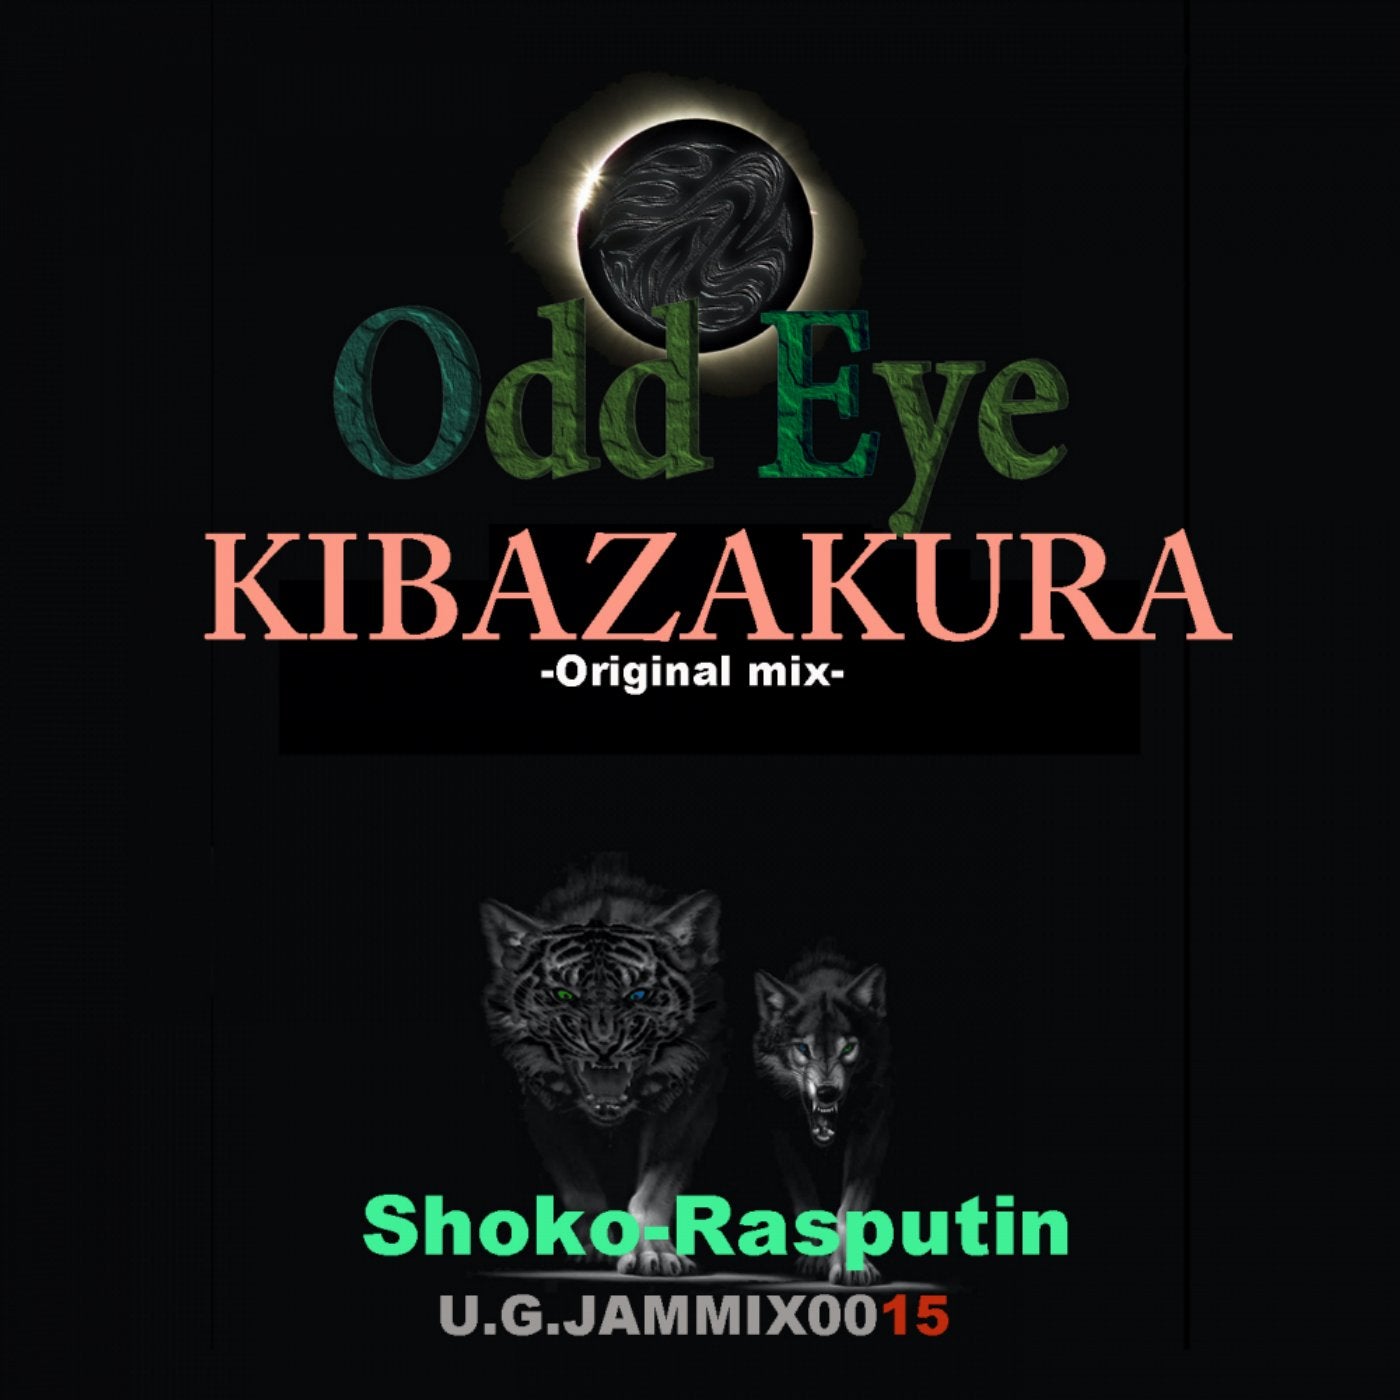 Odd Eye Kibazakura/ EP